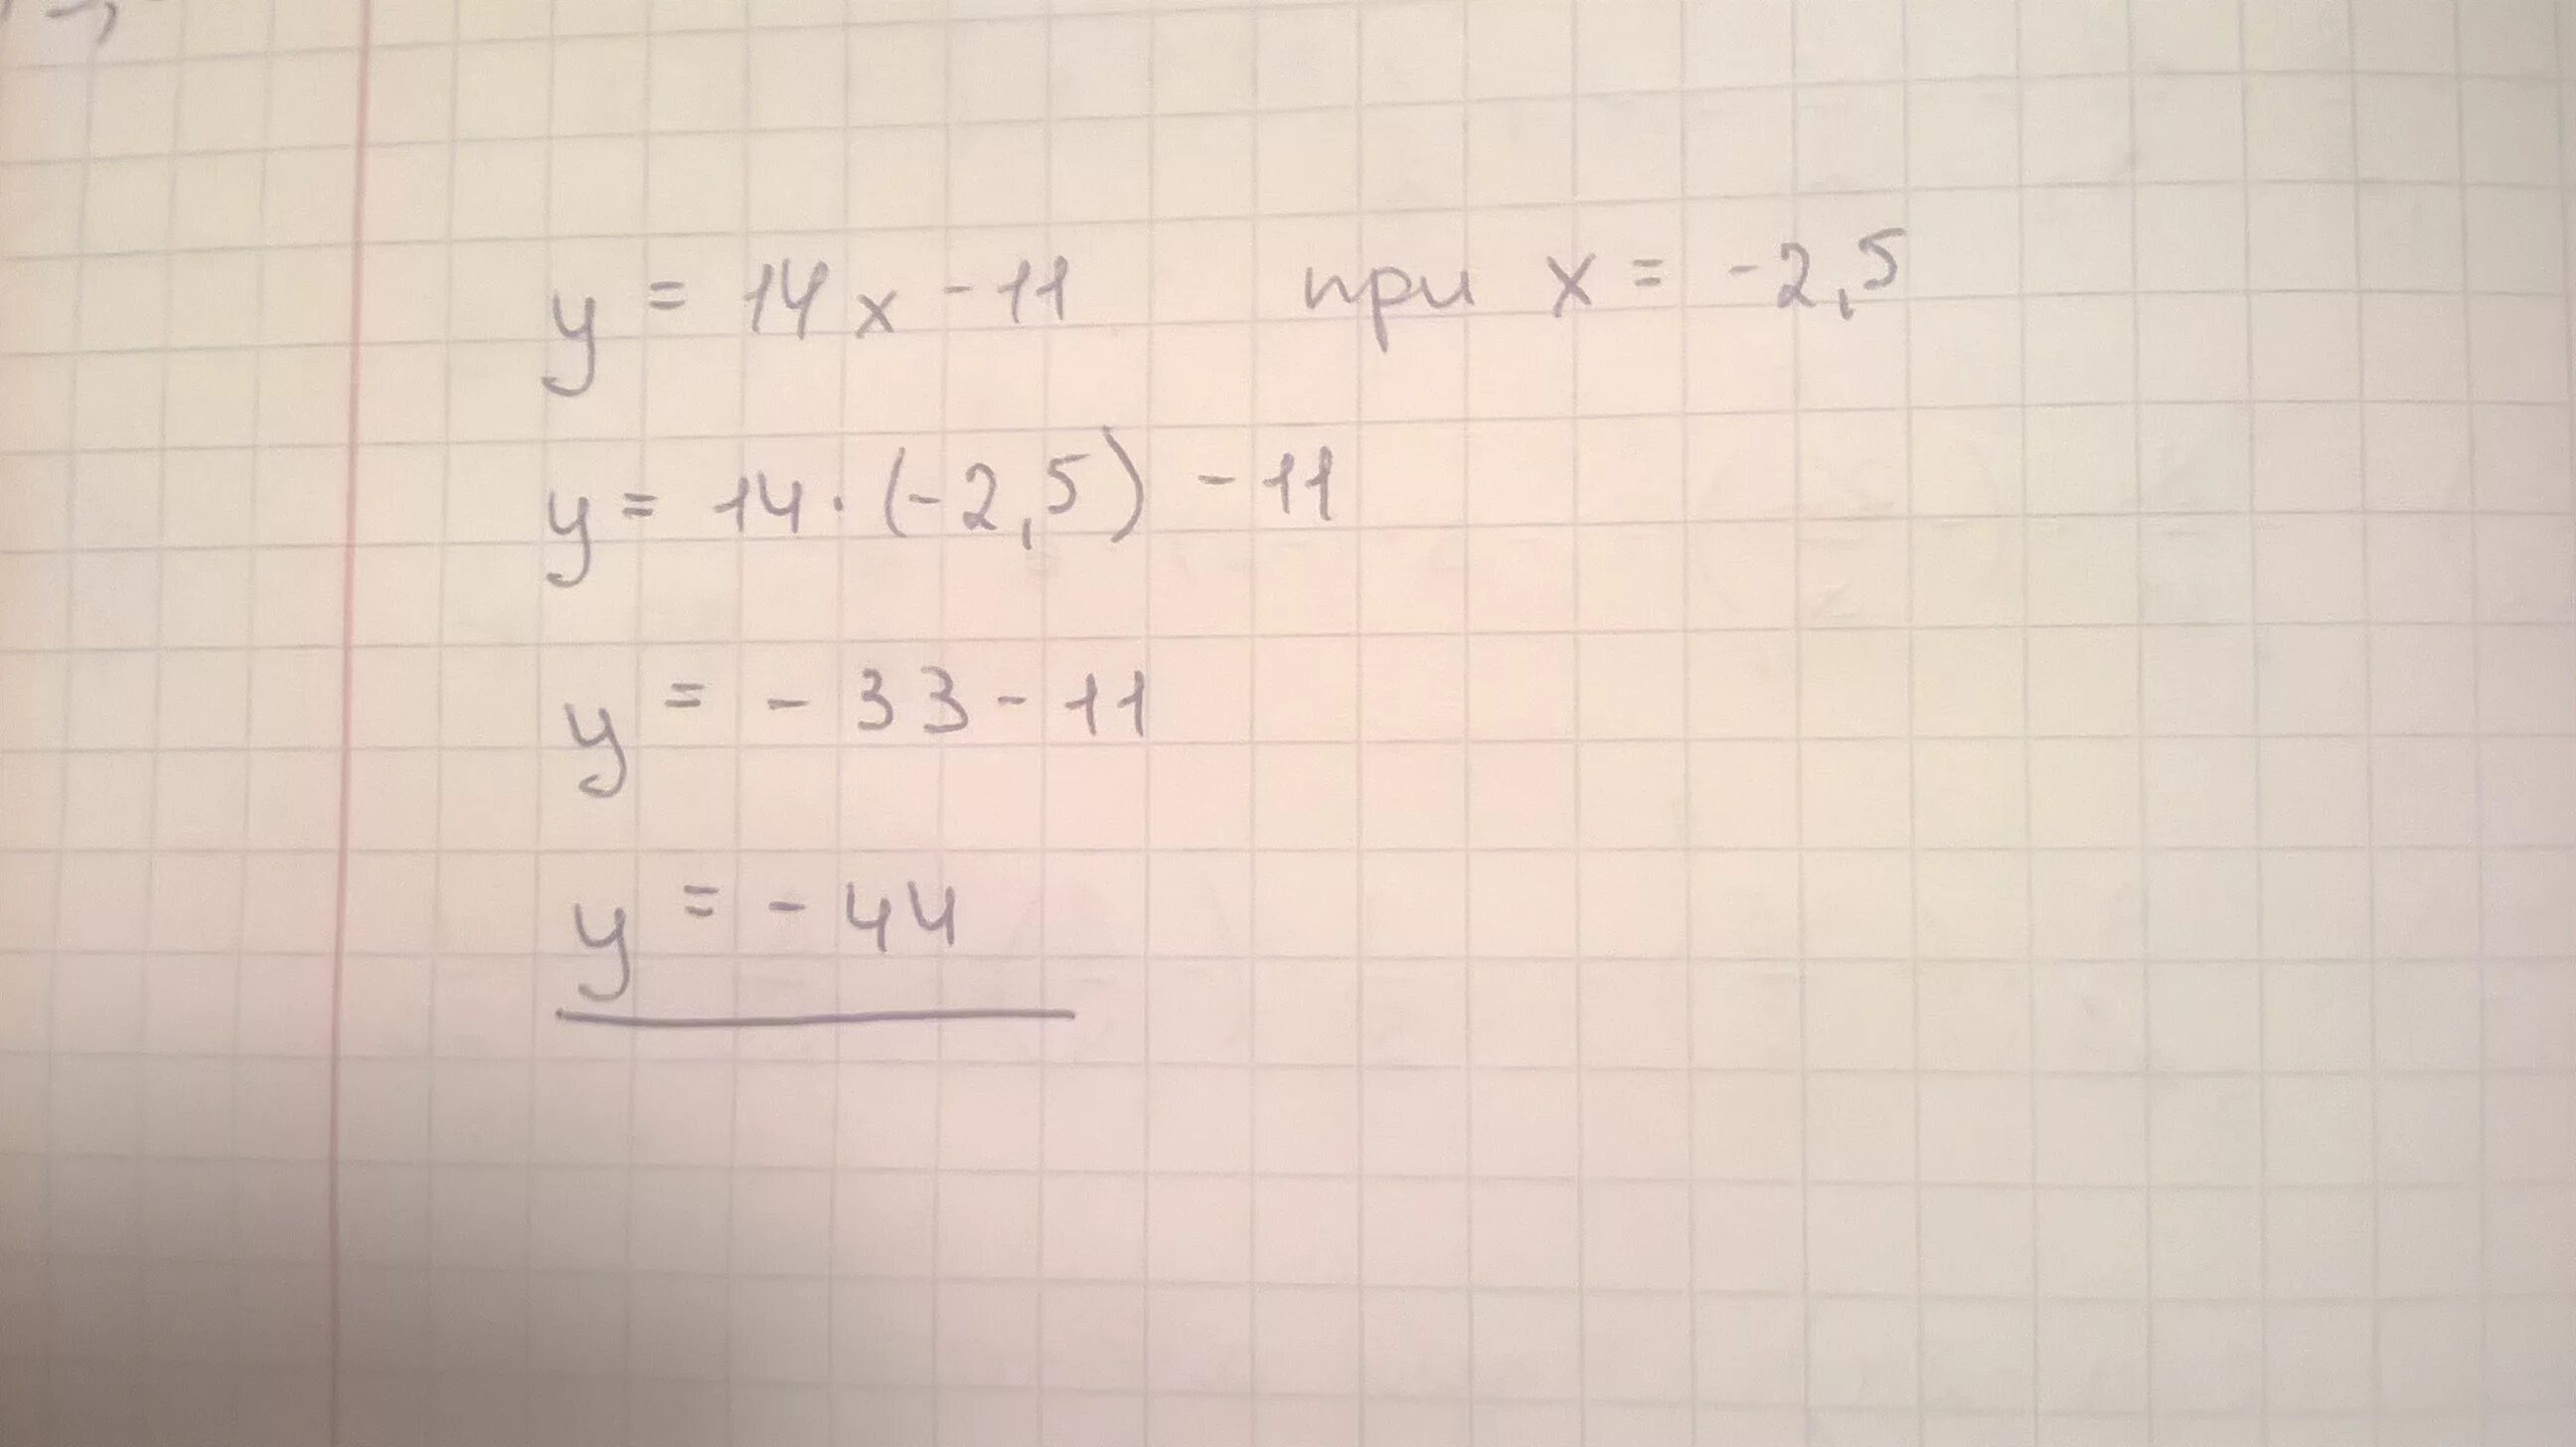 Функция заданной формулой y 4x-30. Функция задана формулой y=-2.5. Функция задана формулой y 2x-15. Функция задана формулой y 4x-30.